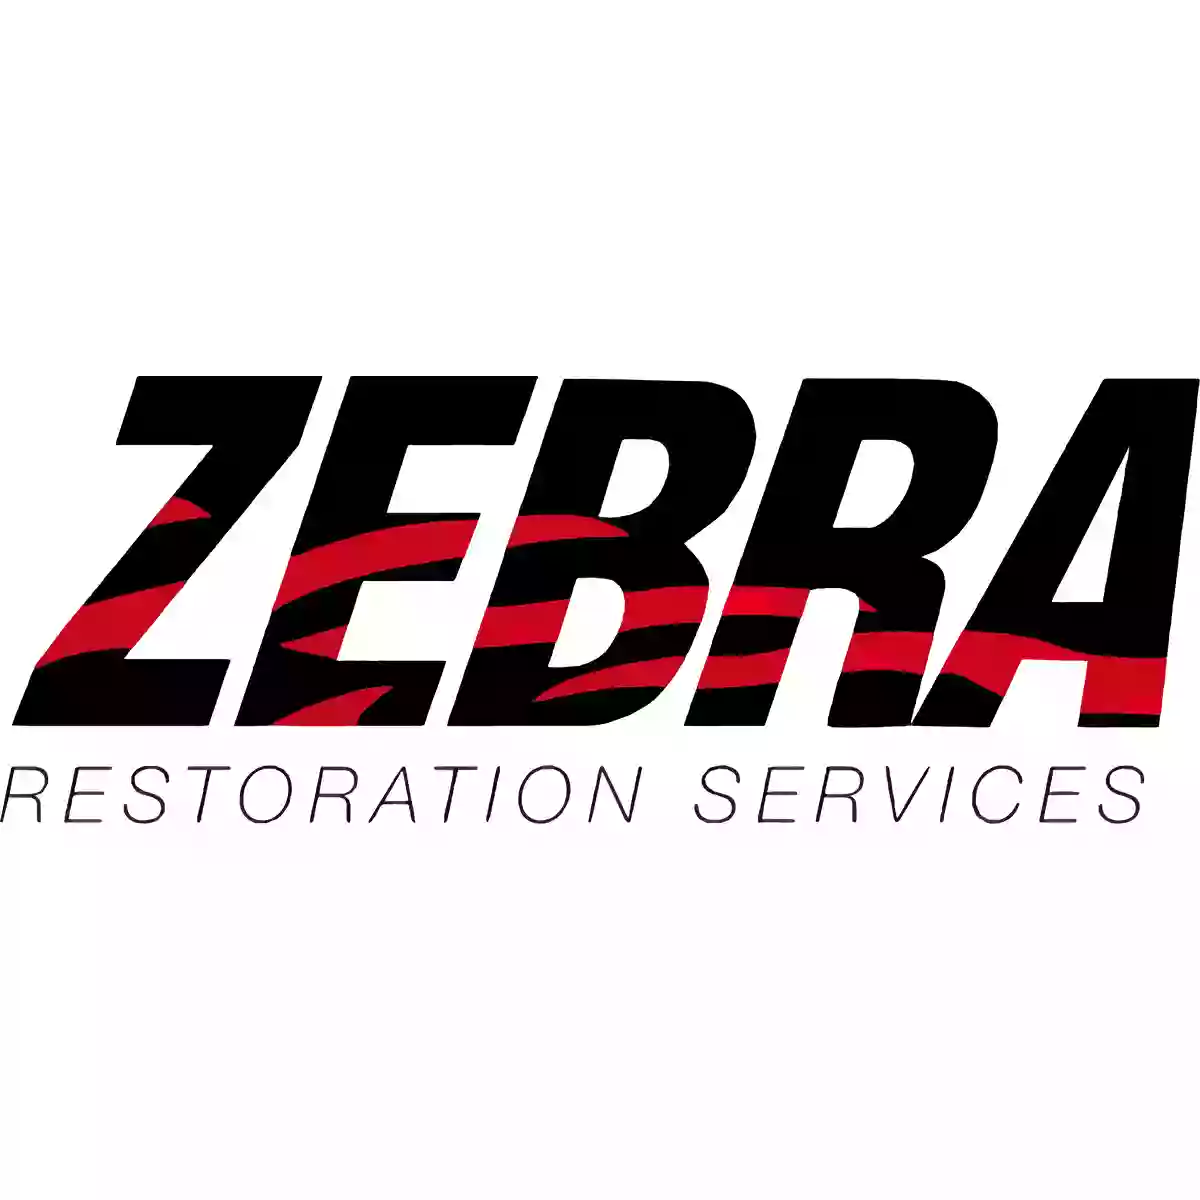 Zebra Restoration